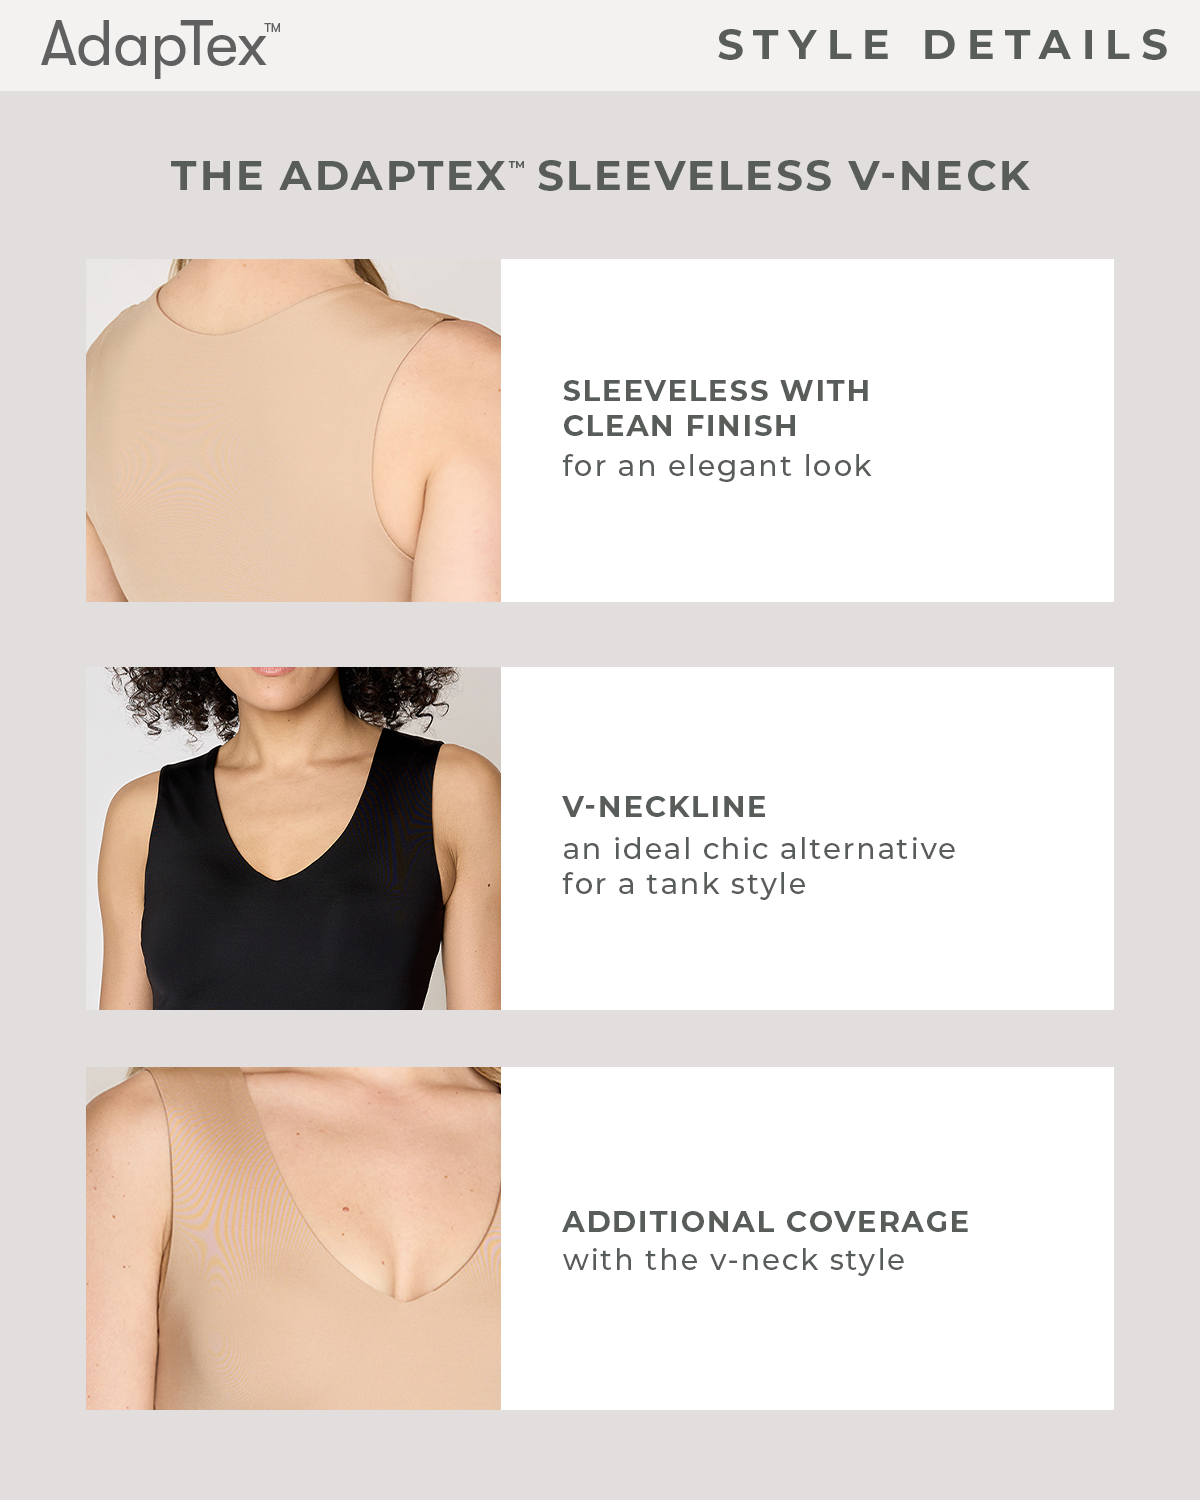 The AdapTex™ Sleeveless V-Neck